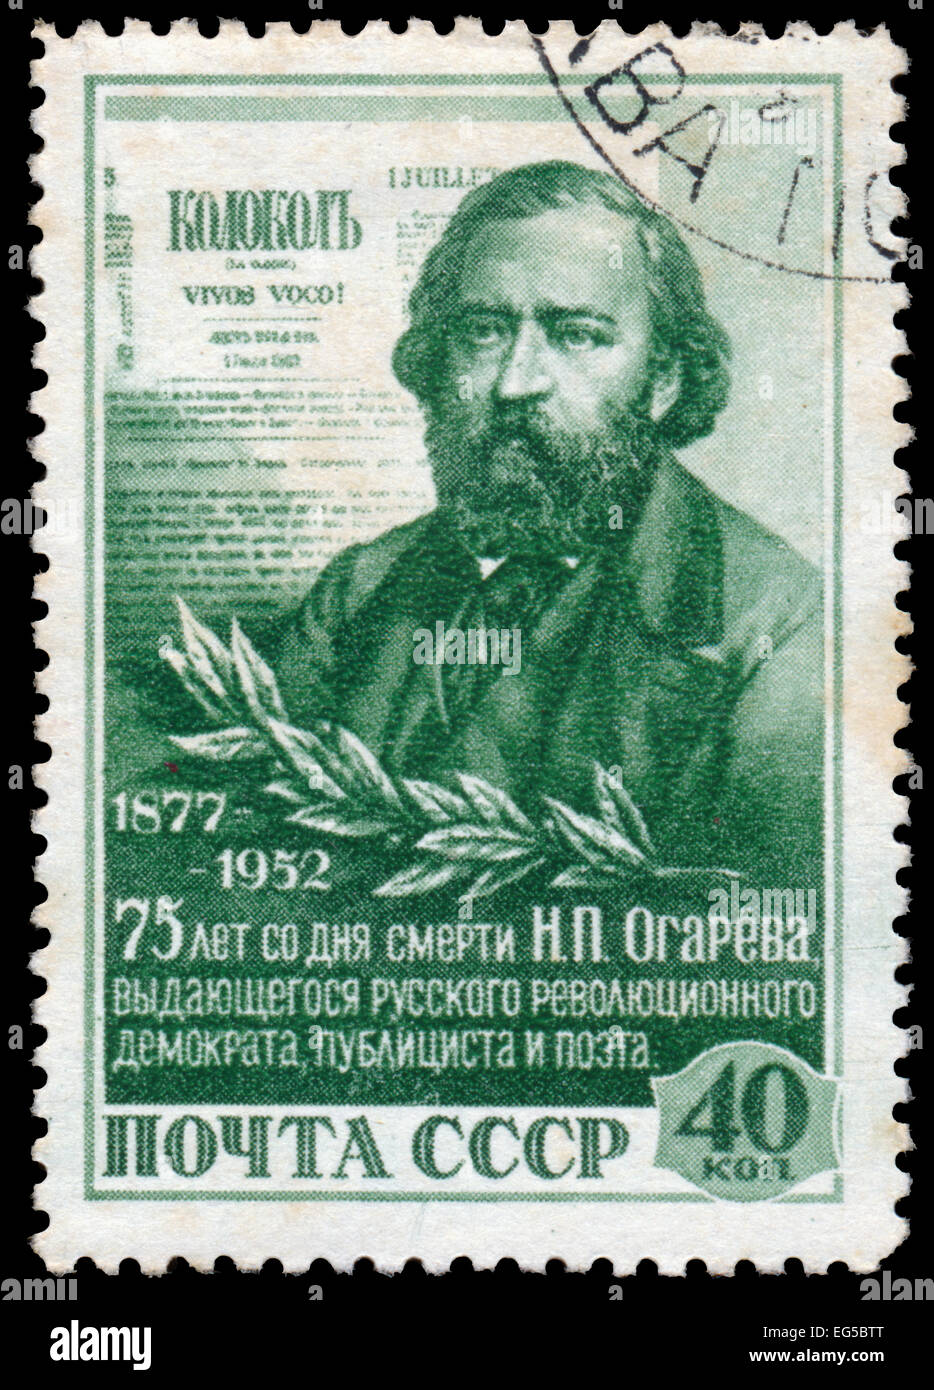 Urss - VERS 1952 : timbres par la Russie, montre Ogarev, vers 1952 Banque D'Images